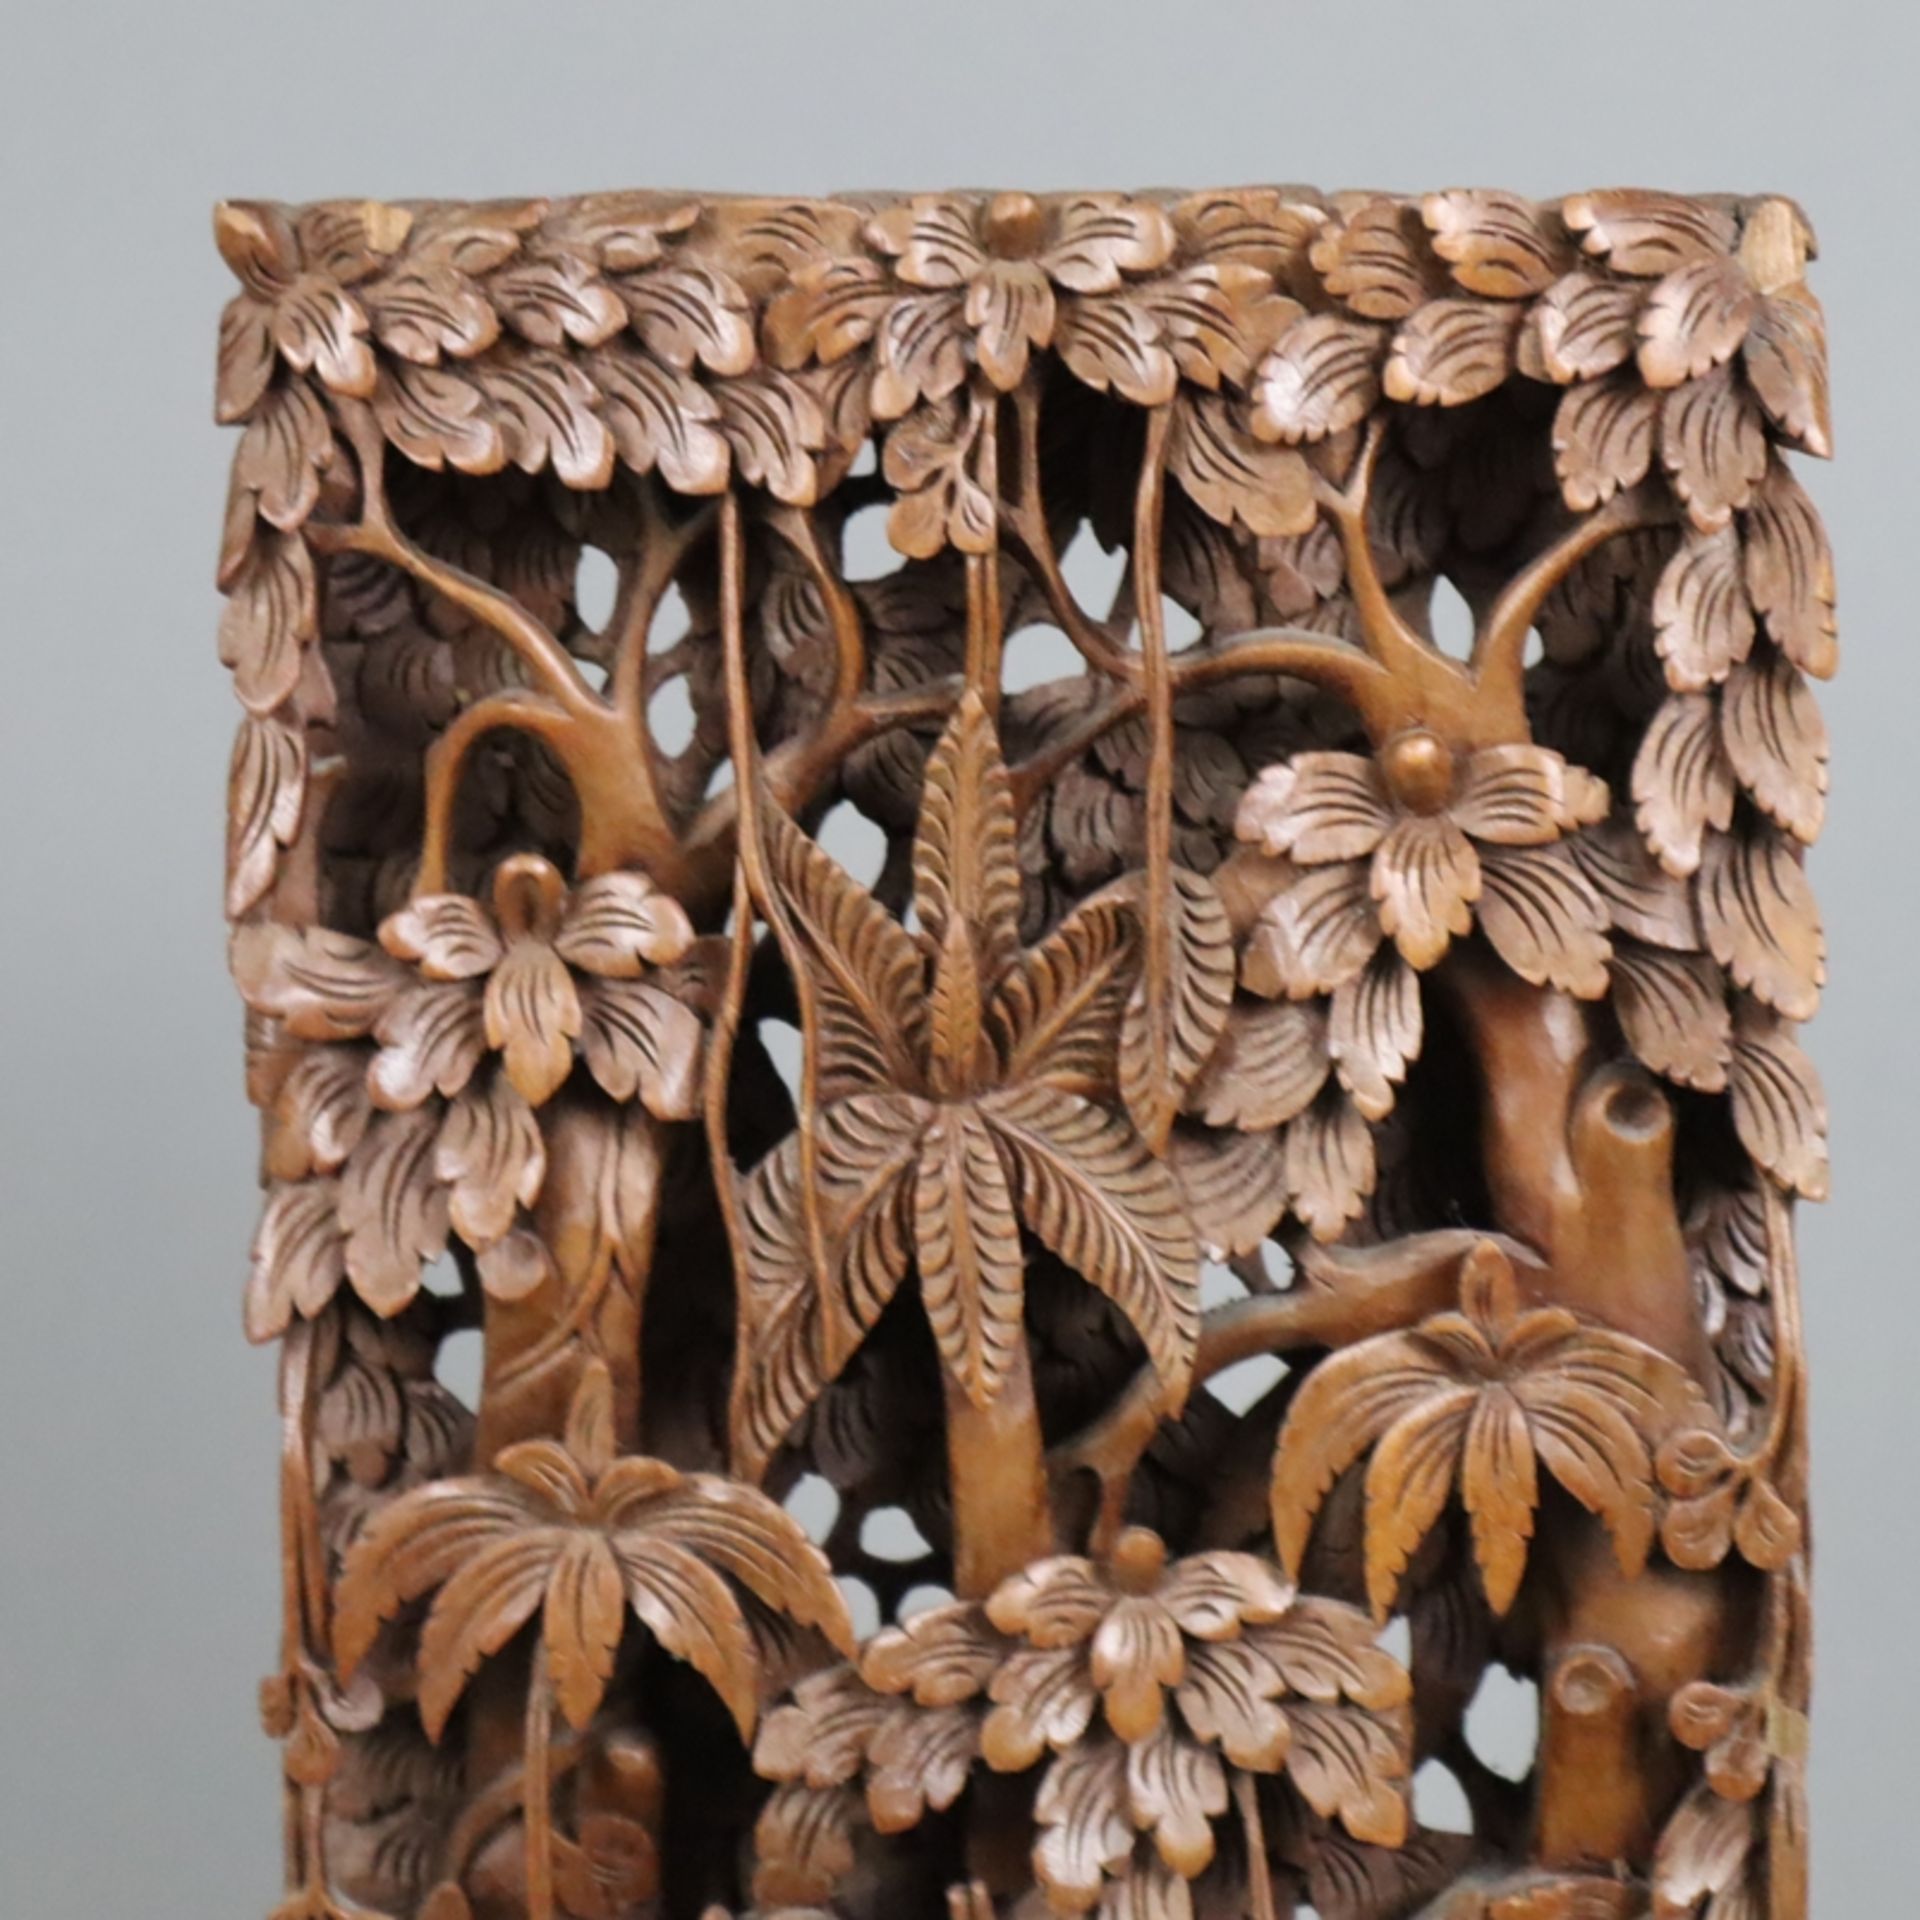 Holzrelief - Indonesien, aufwendige kunstvolle Holzschnitzerei, teils durchbrochen, auch Seiten bea - Image 2 of 7